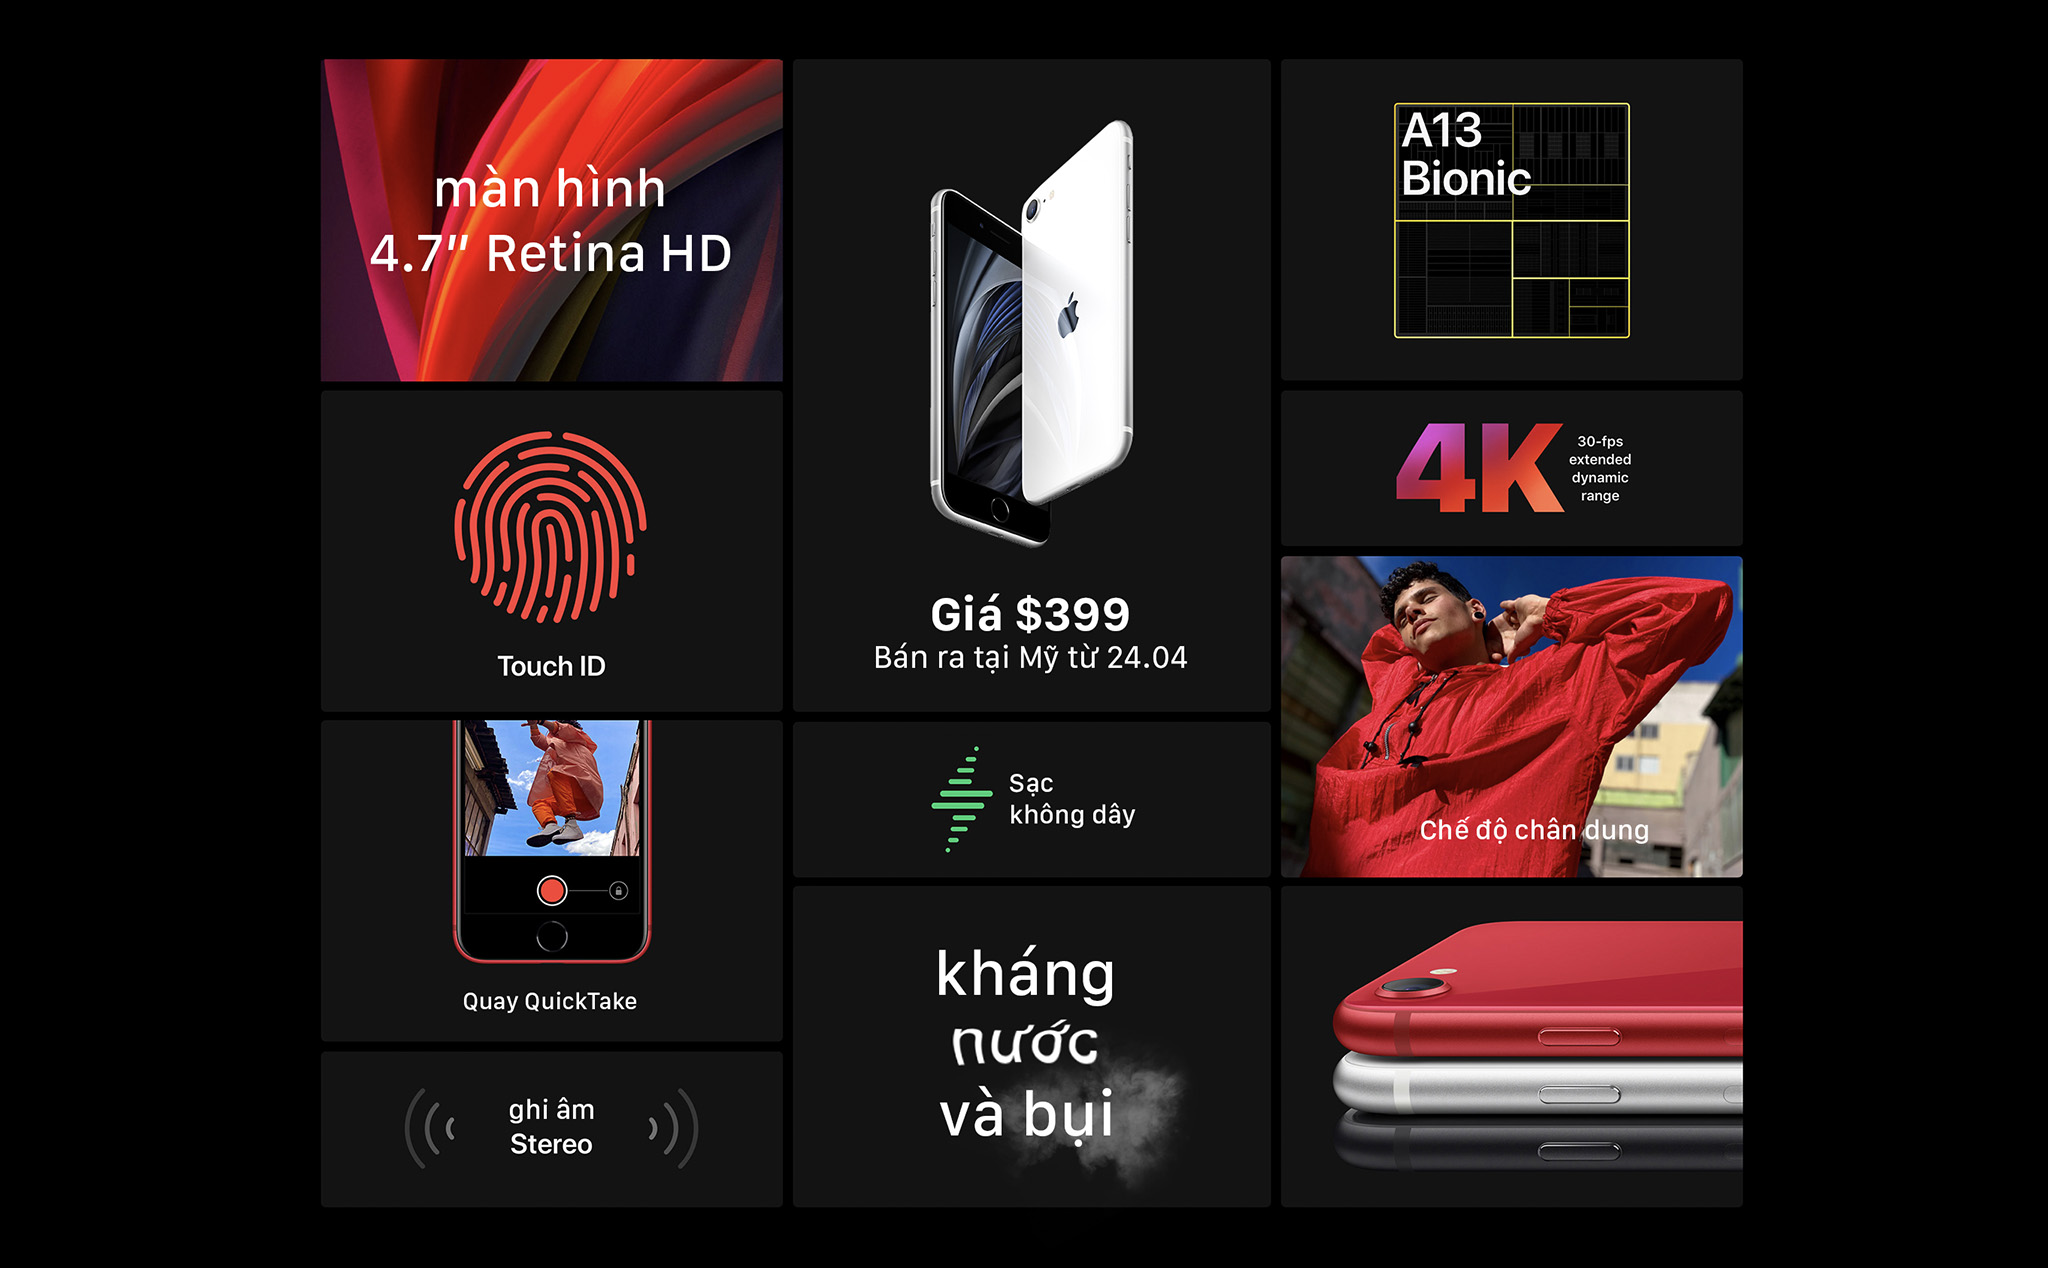 iPhone SE mới chính thức: Màn hình 4.7", nút Home, A13 Bionic, giá từ 399 USD